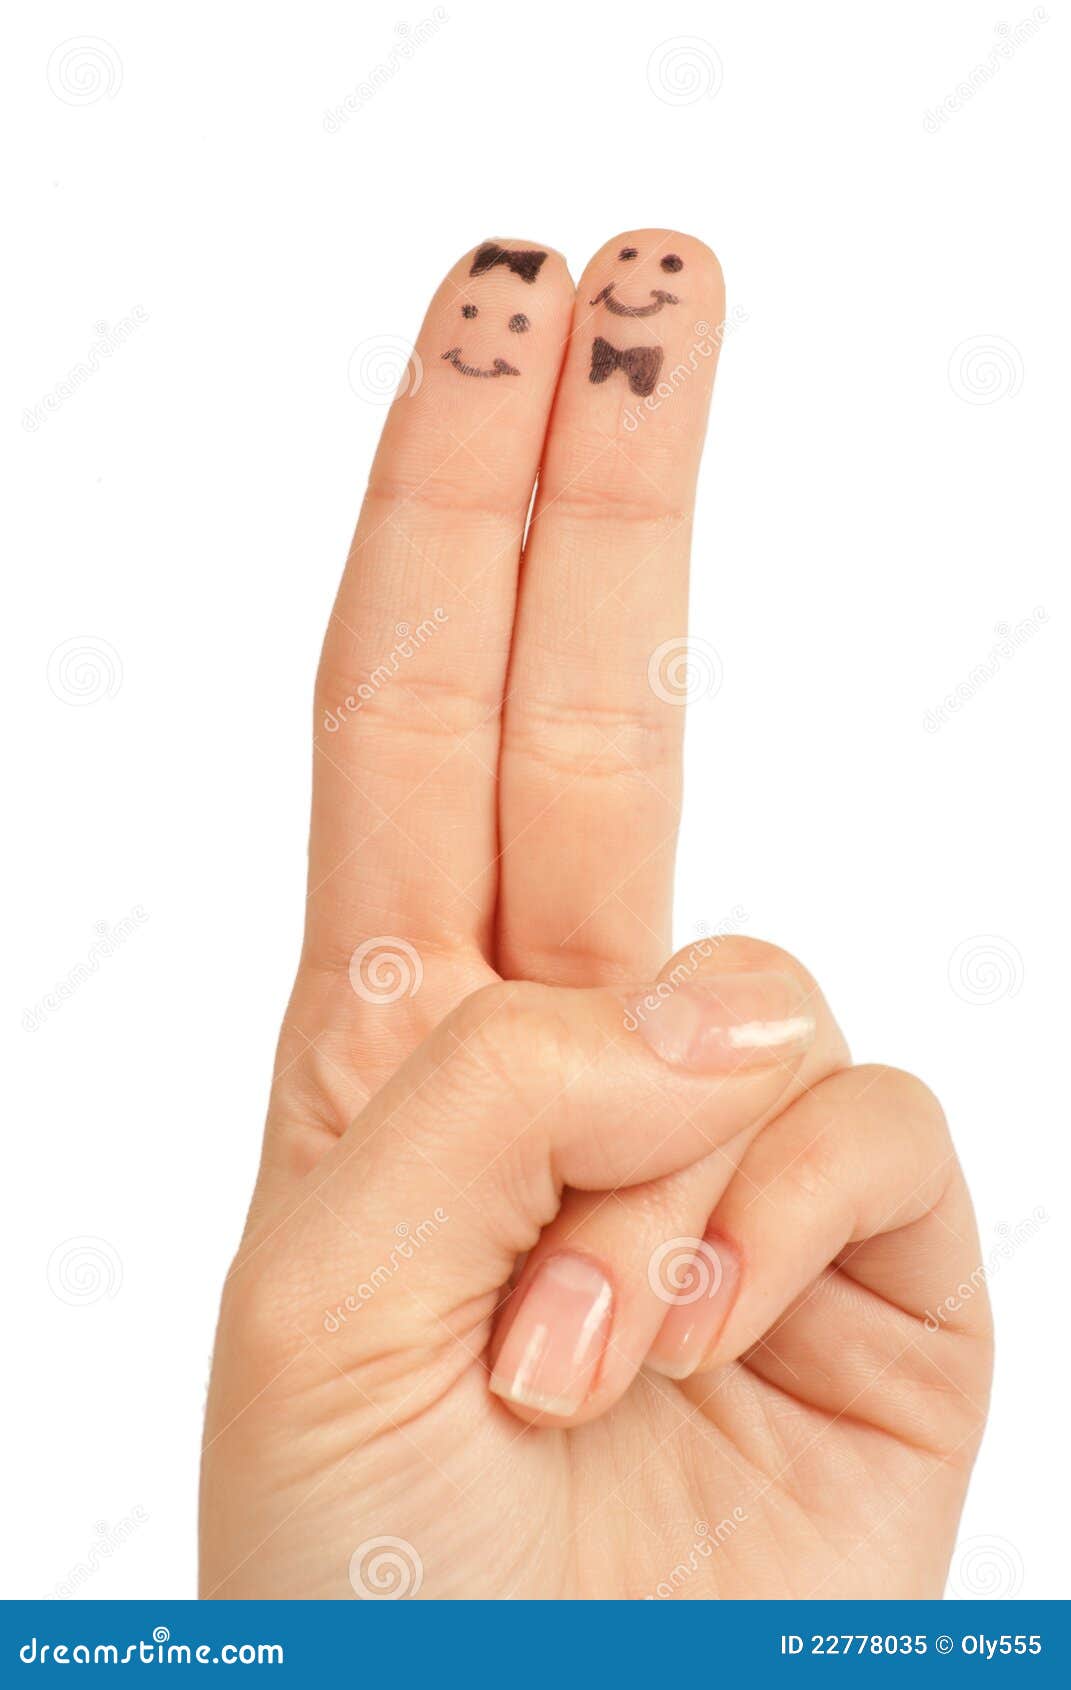 Пальчики вместе. Рожицы на пальцах. Смайлик с двумя пальцами. Смайлик с пальчиками. Улыбающиеся пальчики.